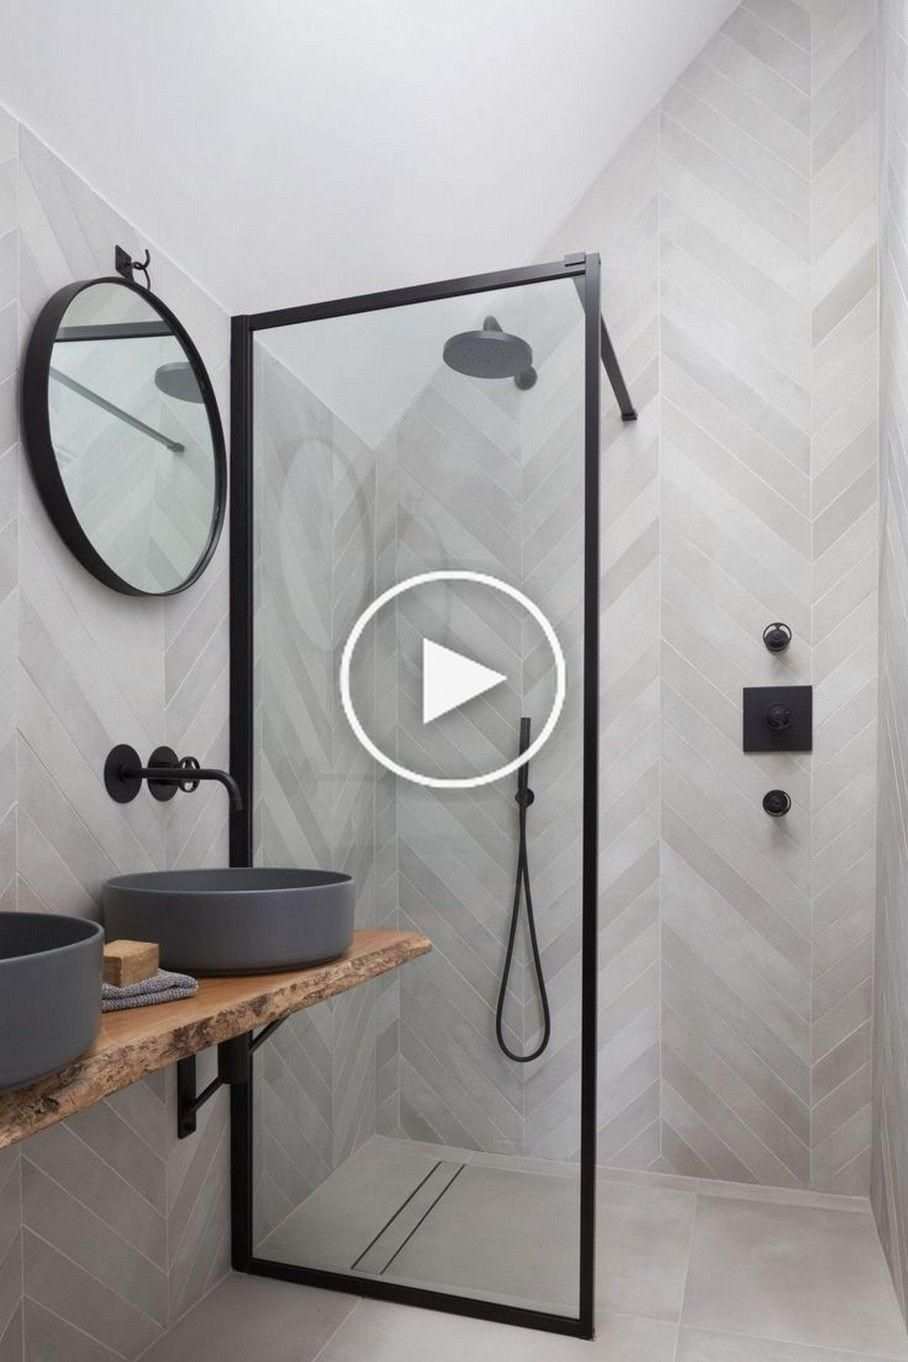 10 Badkamer Renovatie Ideeen Voor Schoonheid En Gemak Badkamer